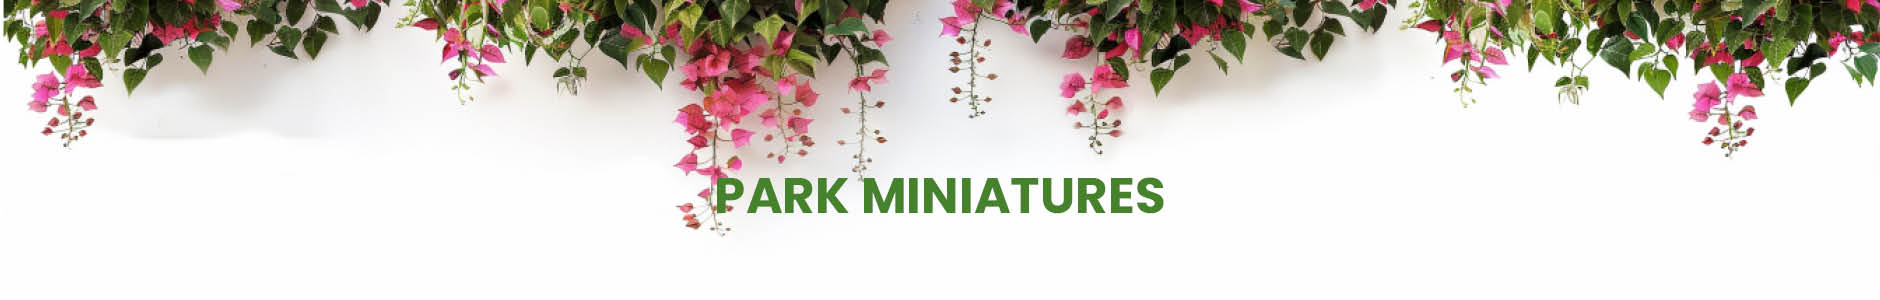 Park Miniatures